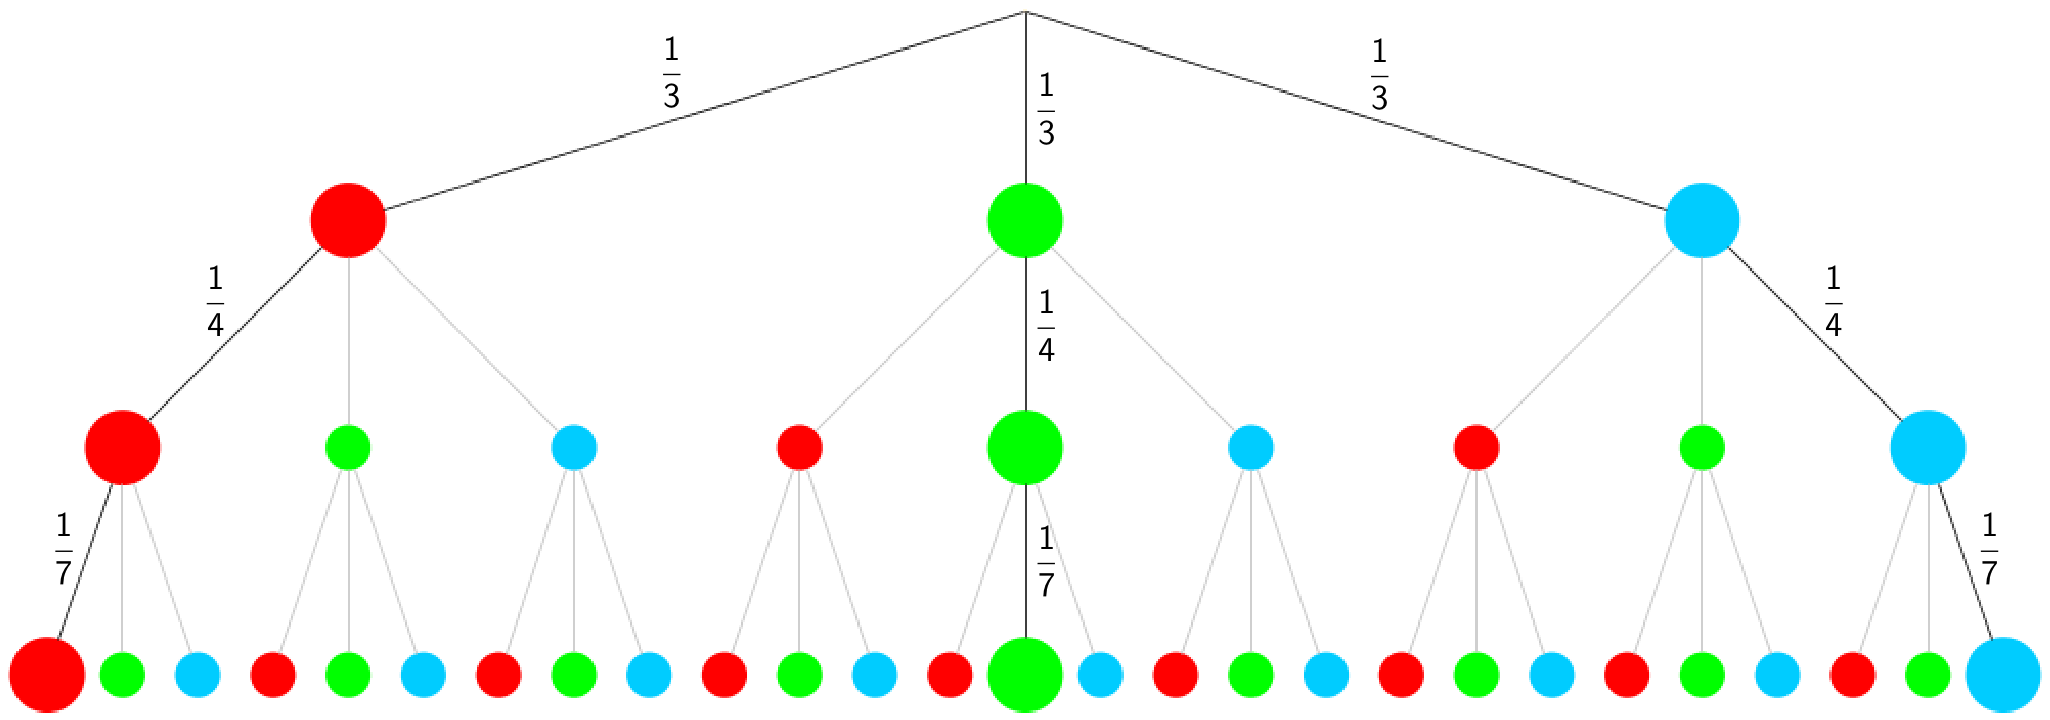 Baumdiagramm: 3-stufiges Zufallsexperiment mit Hervorhebung der für einen Gewinn relevanten Pfade